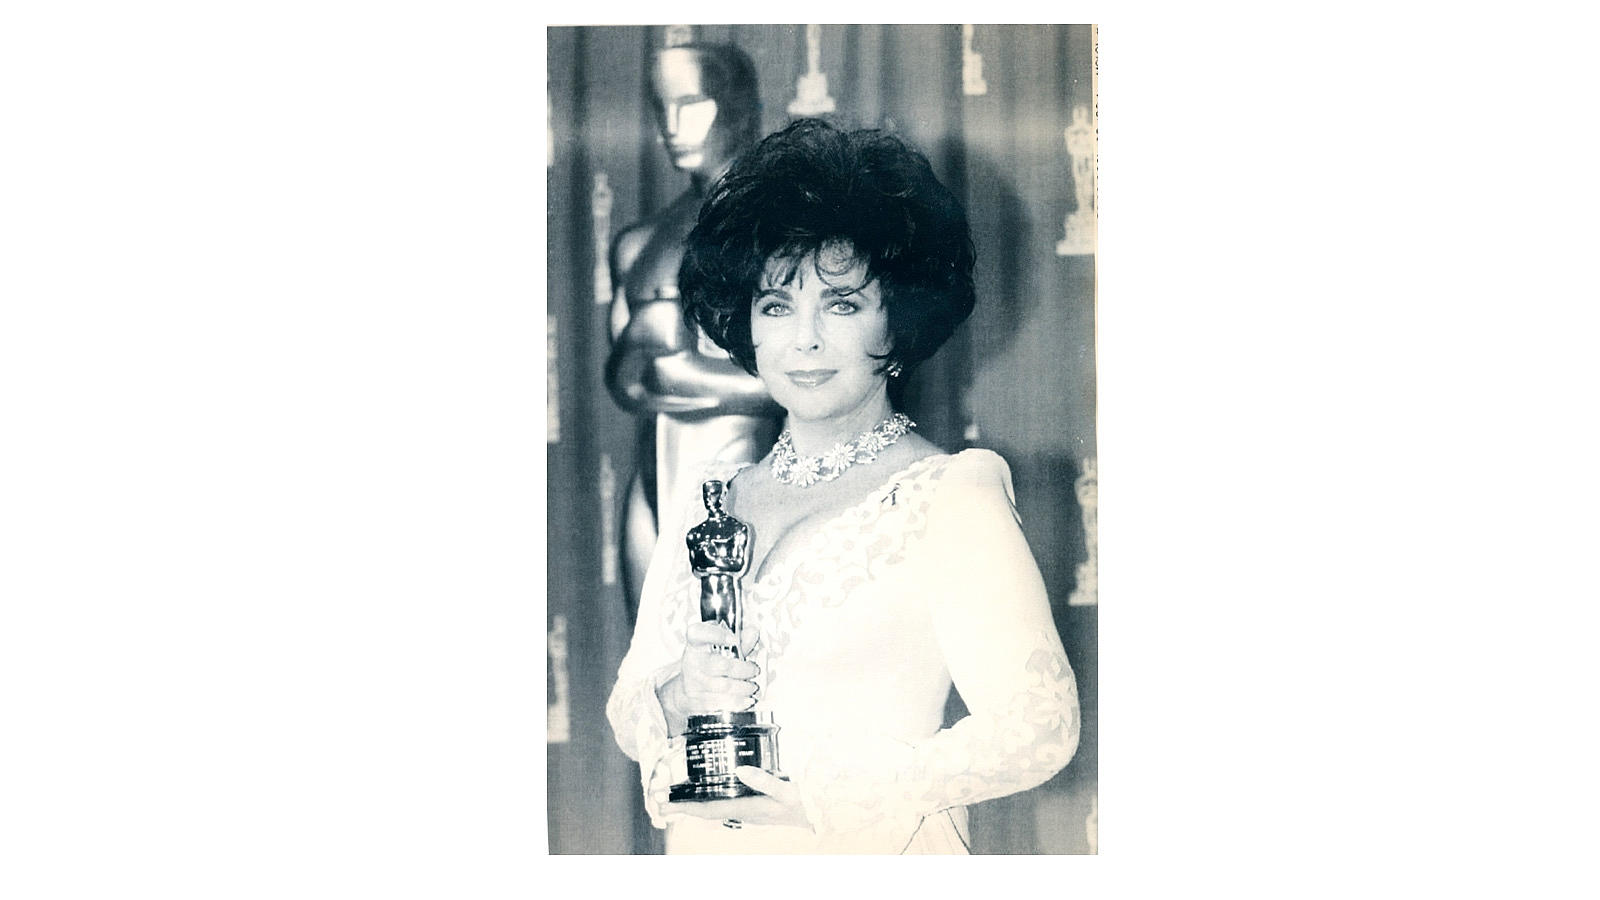 En 1993 Elizabeth Taylor recogió uno de los Oscars honoríficos, el Jean Hersholt como reconocimiento a su labor humanitaria con los enfermos de Sida